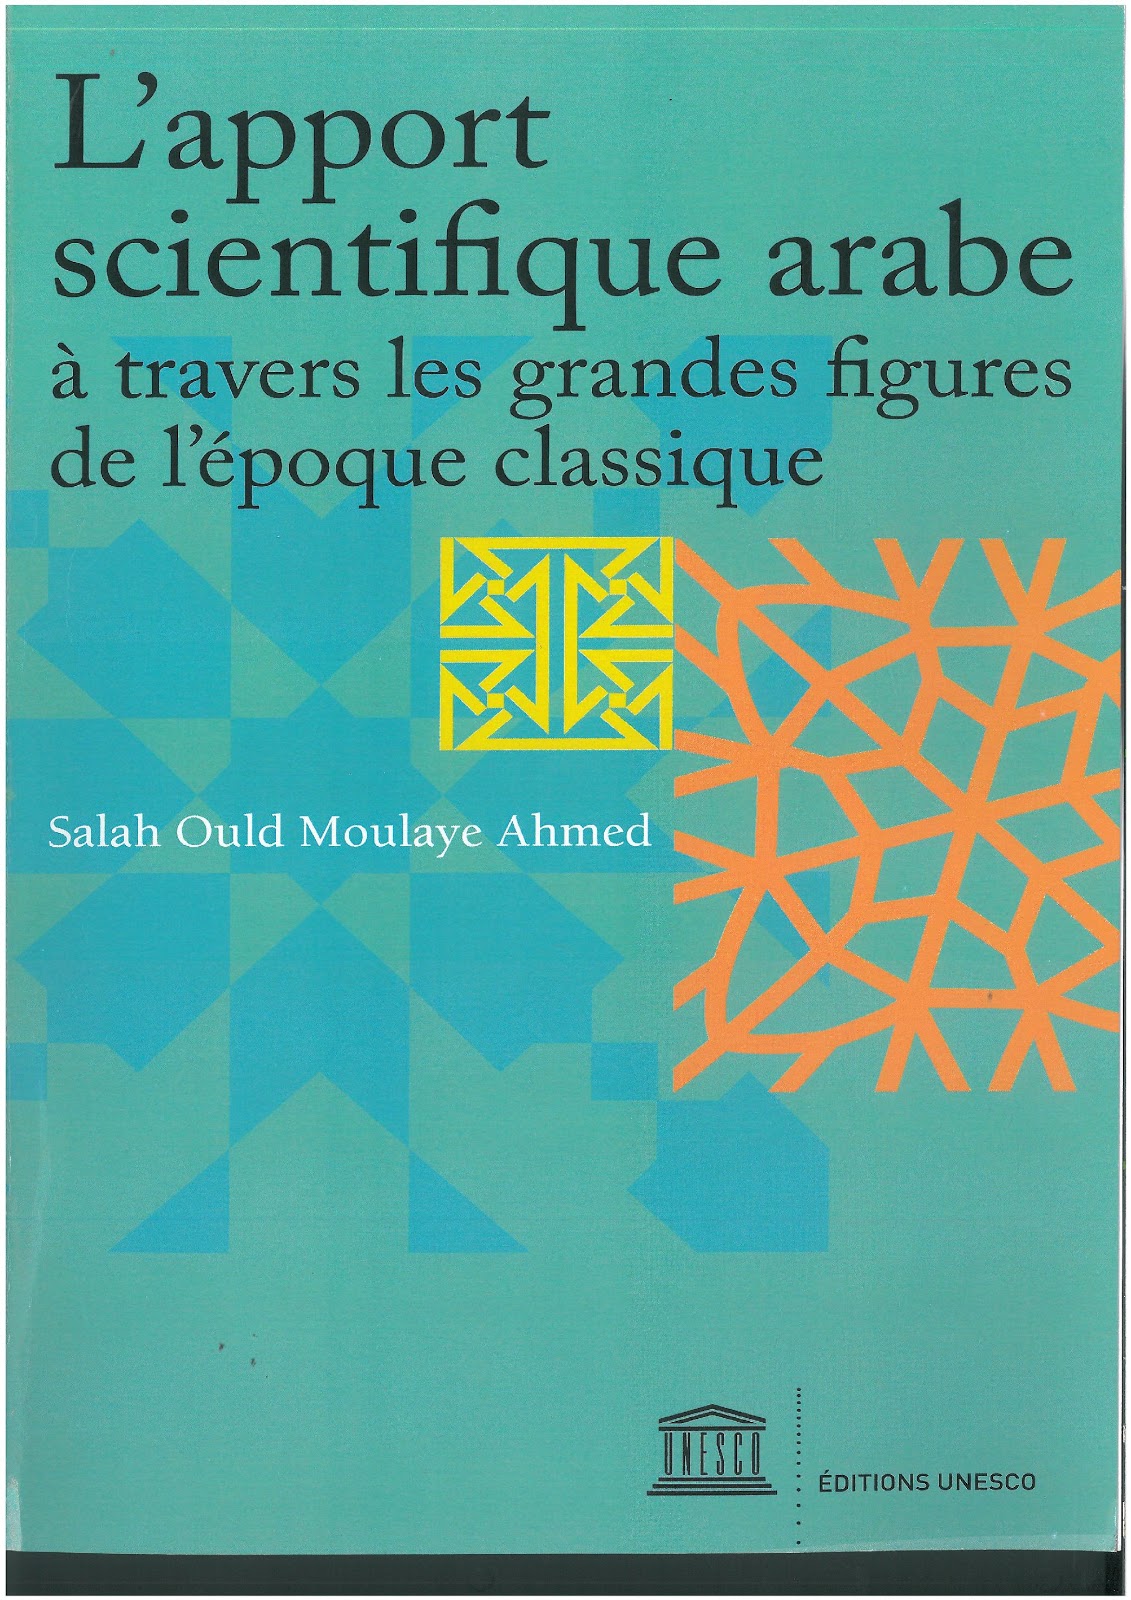 L'apport scientifique arabe : Un livre de Salah Ould moulay Ahmed